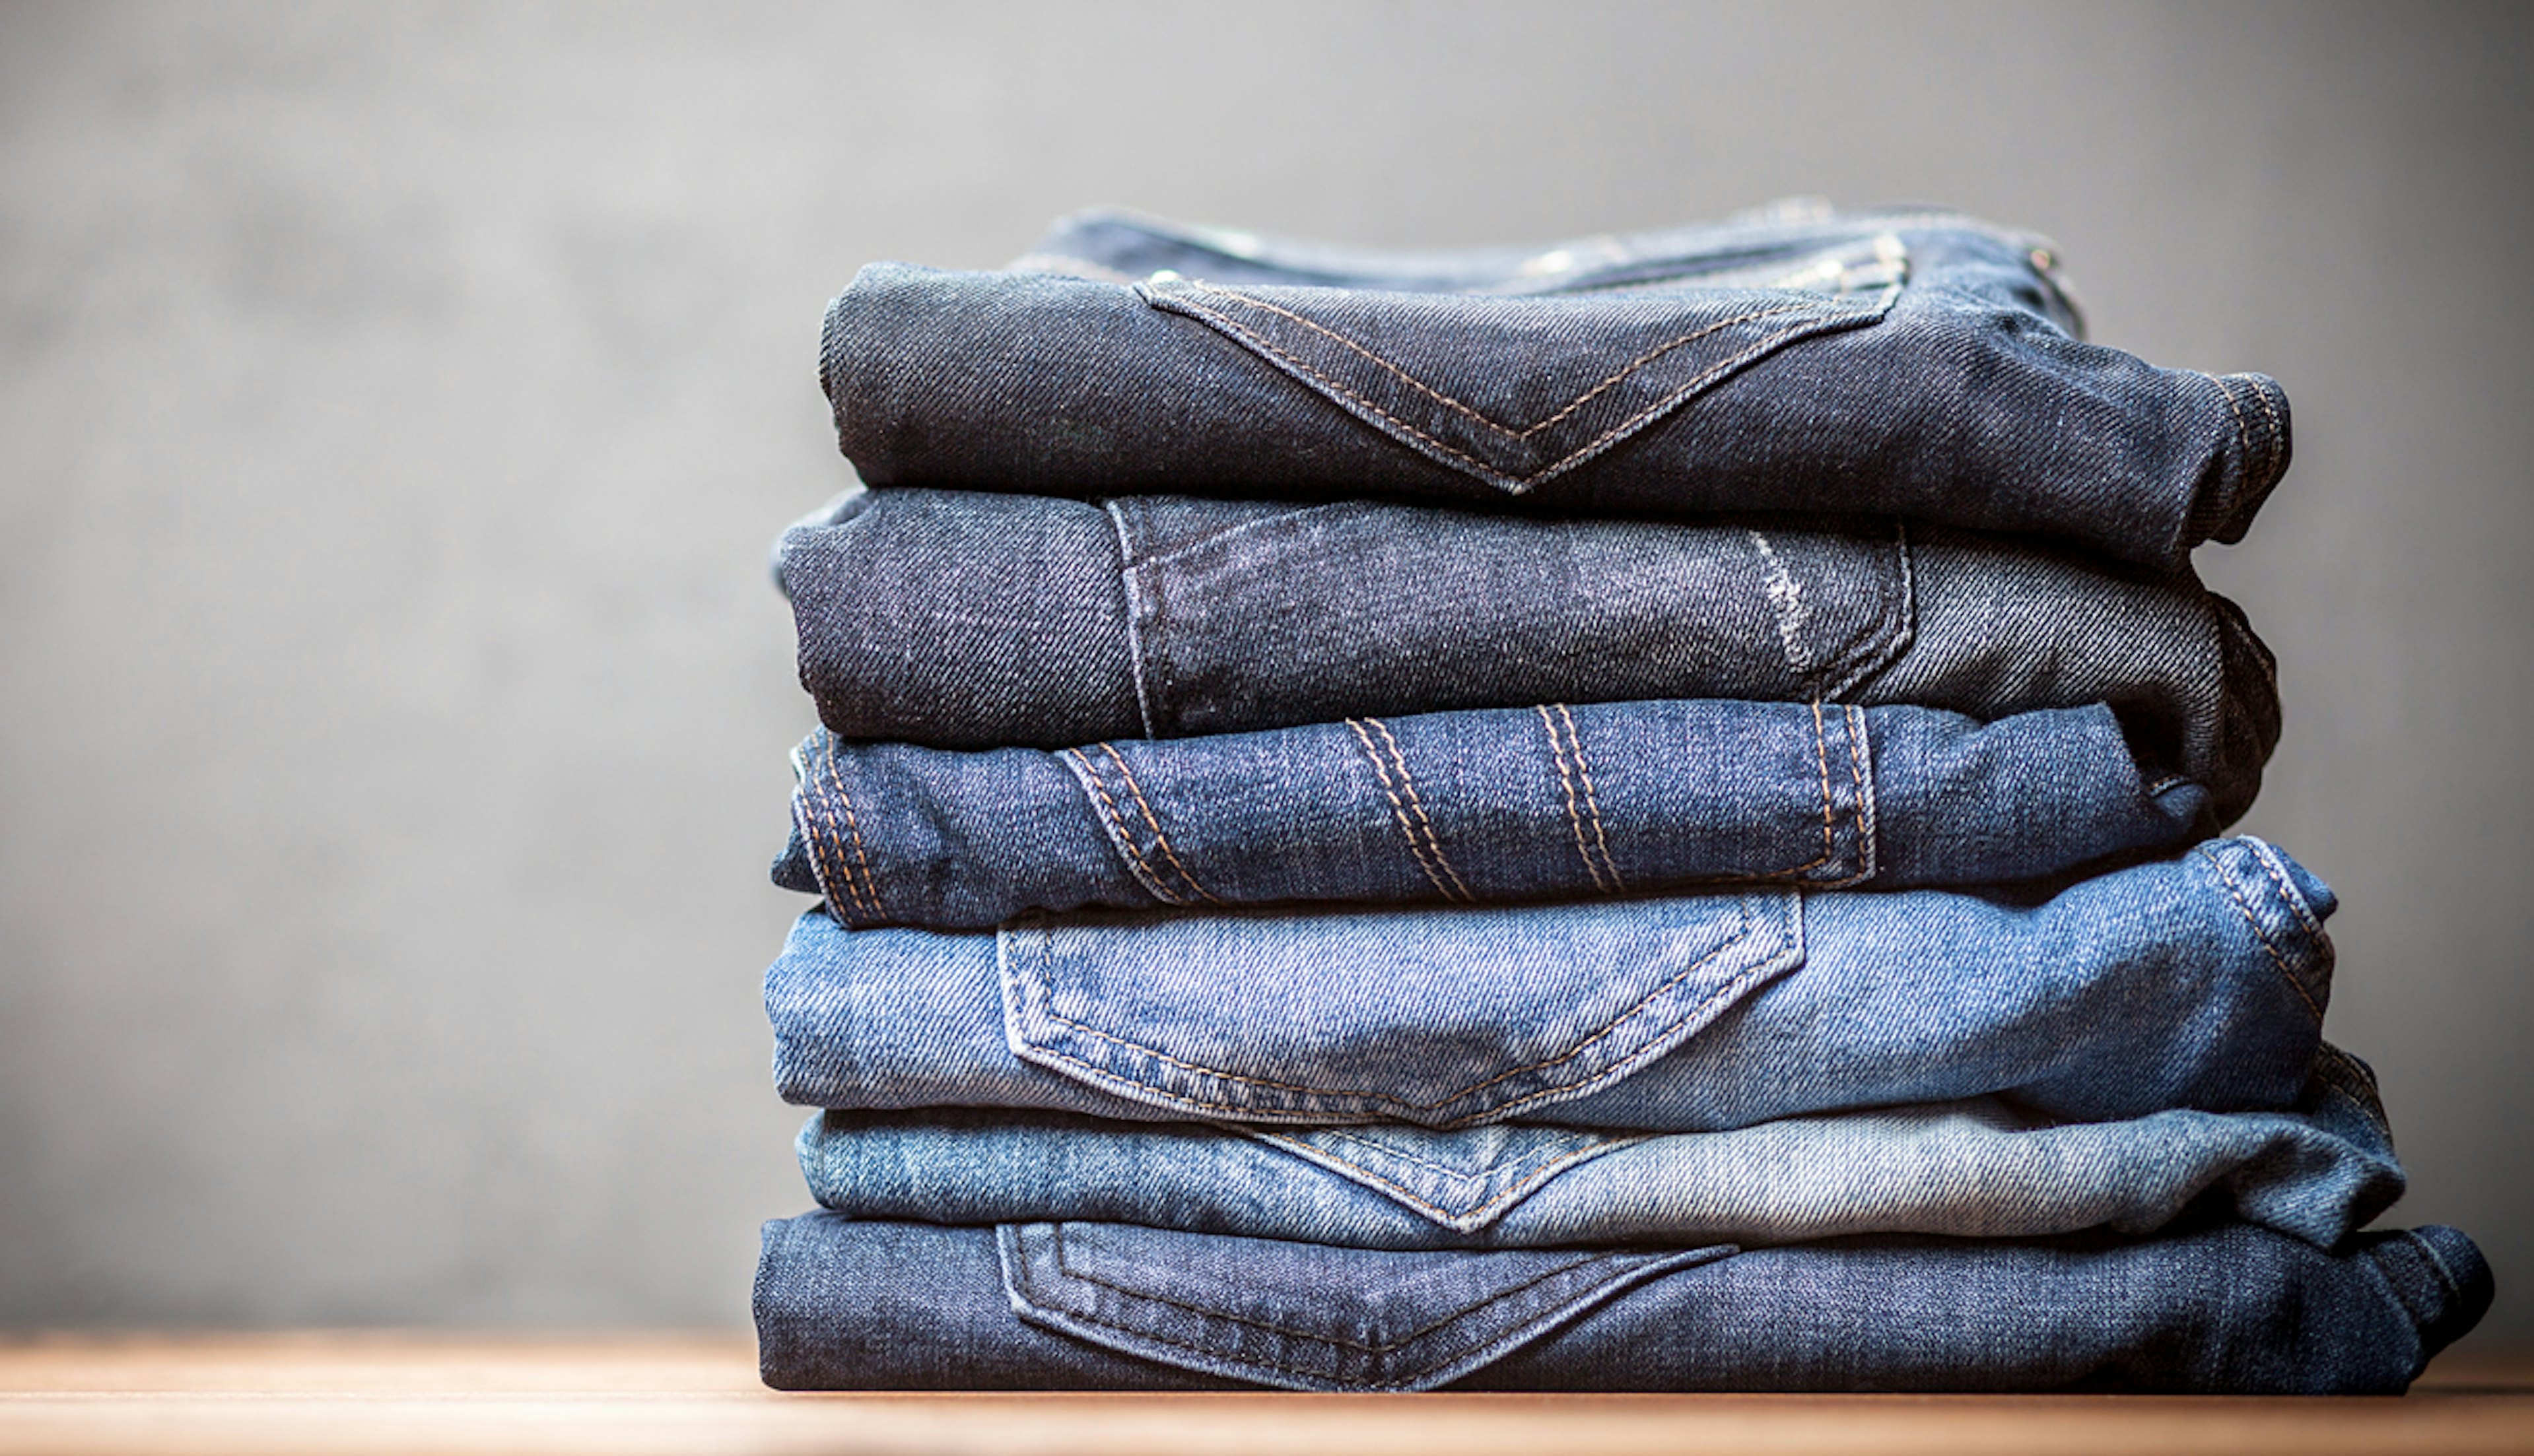 Jeans-programma: speciaal voor spijkerbroeken of denim jasjes.